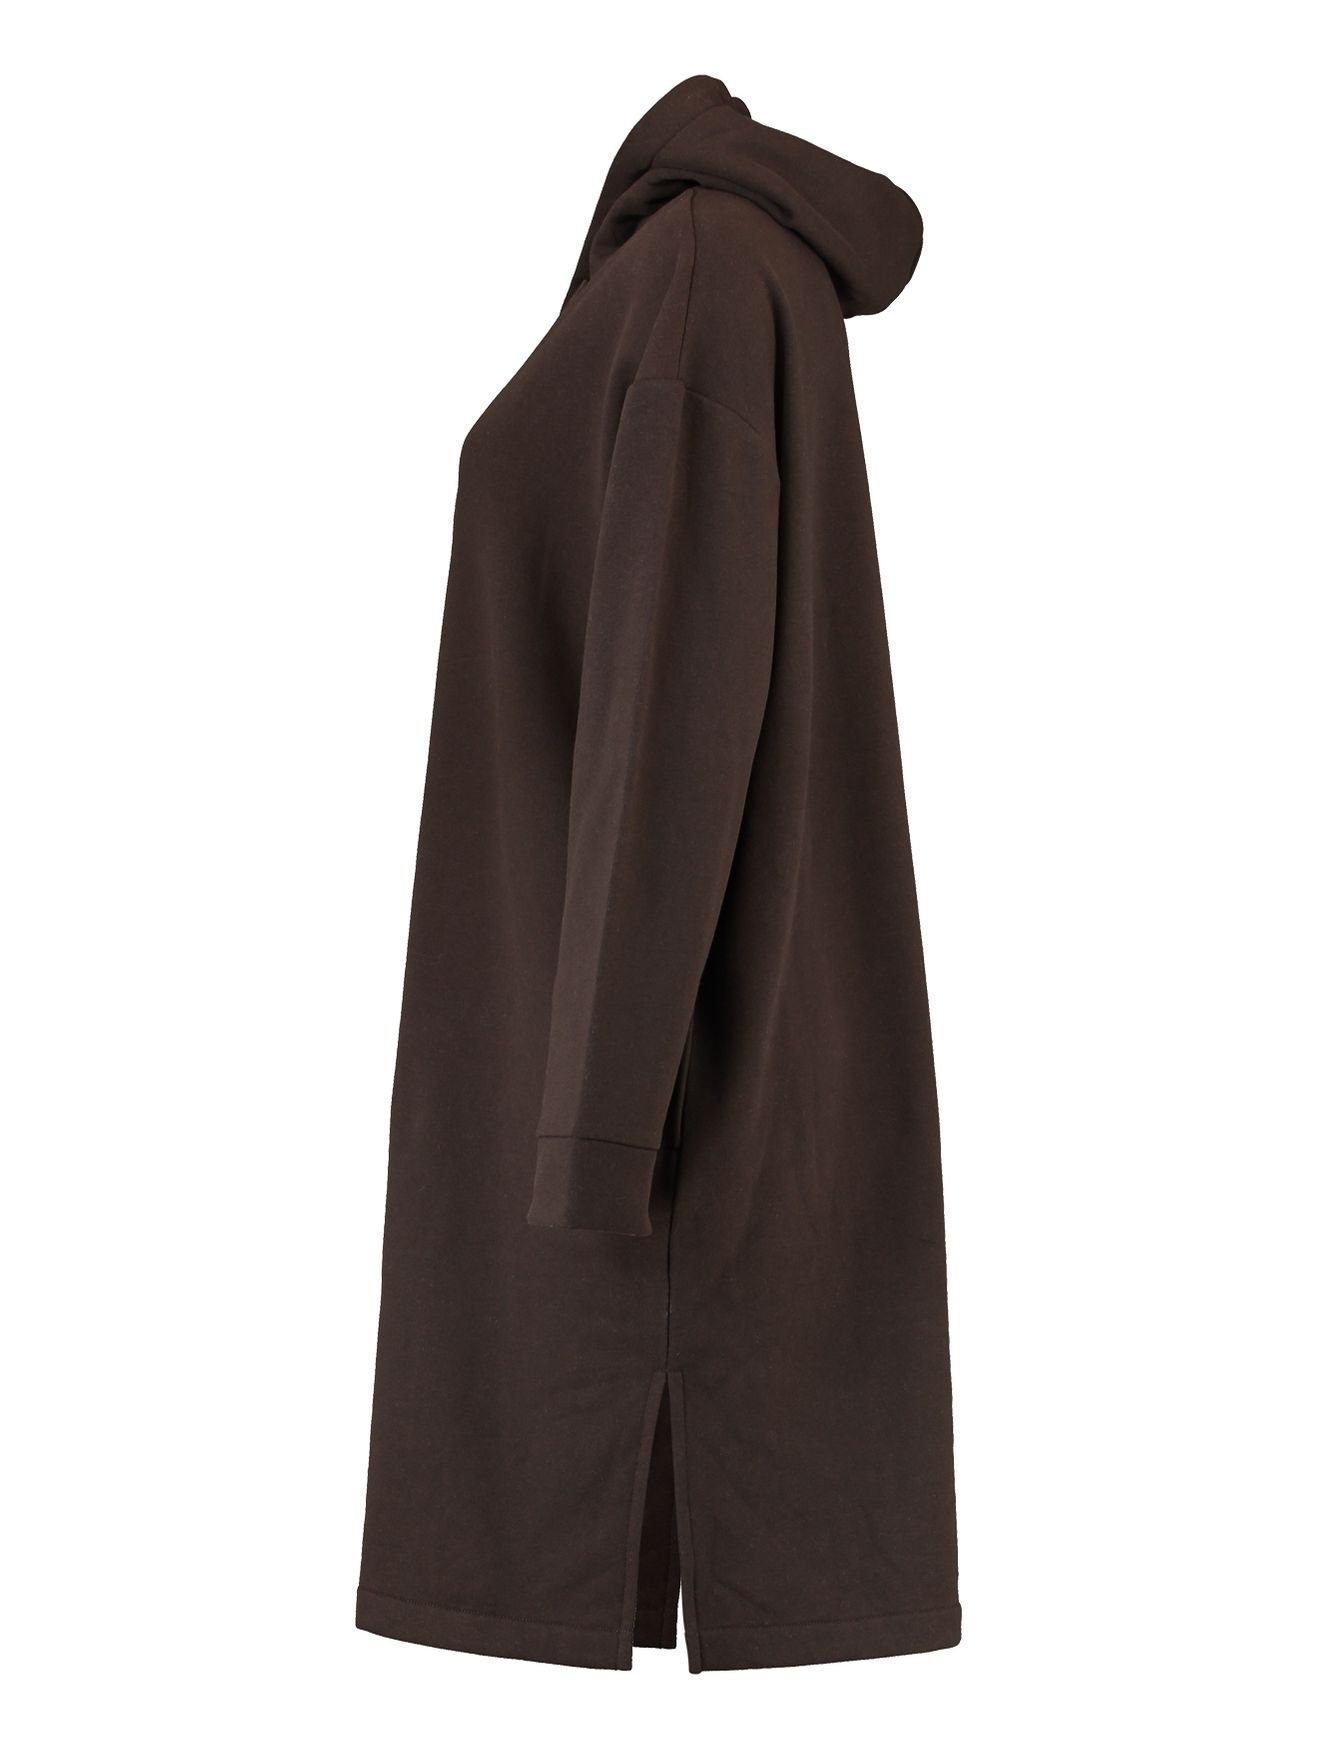 SWERA HaILY’S Kapuzen Sweat in Braun-2 Mini Pullover Kleid Knielang (lang) Hoodie Shirtkleid Dress 4705